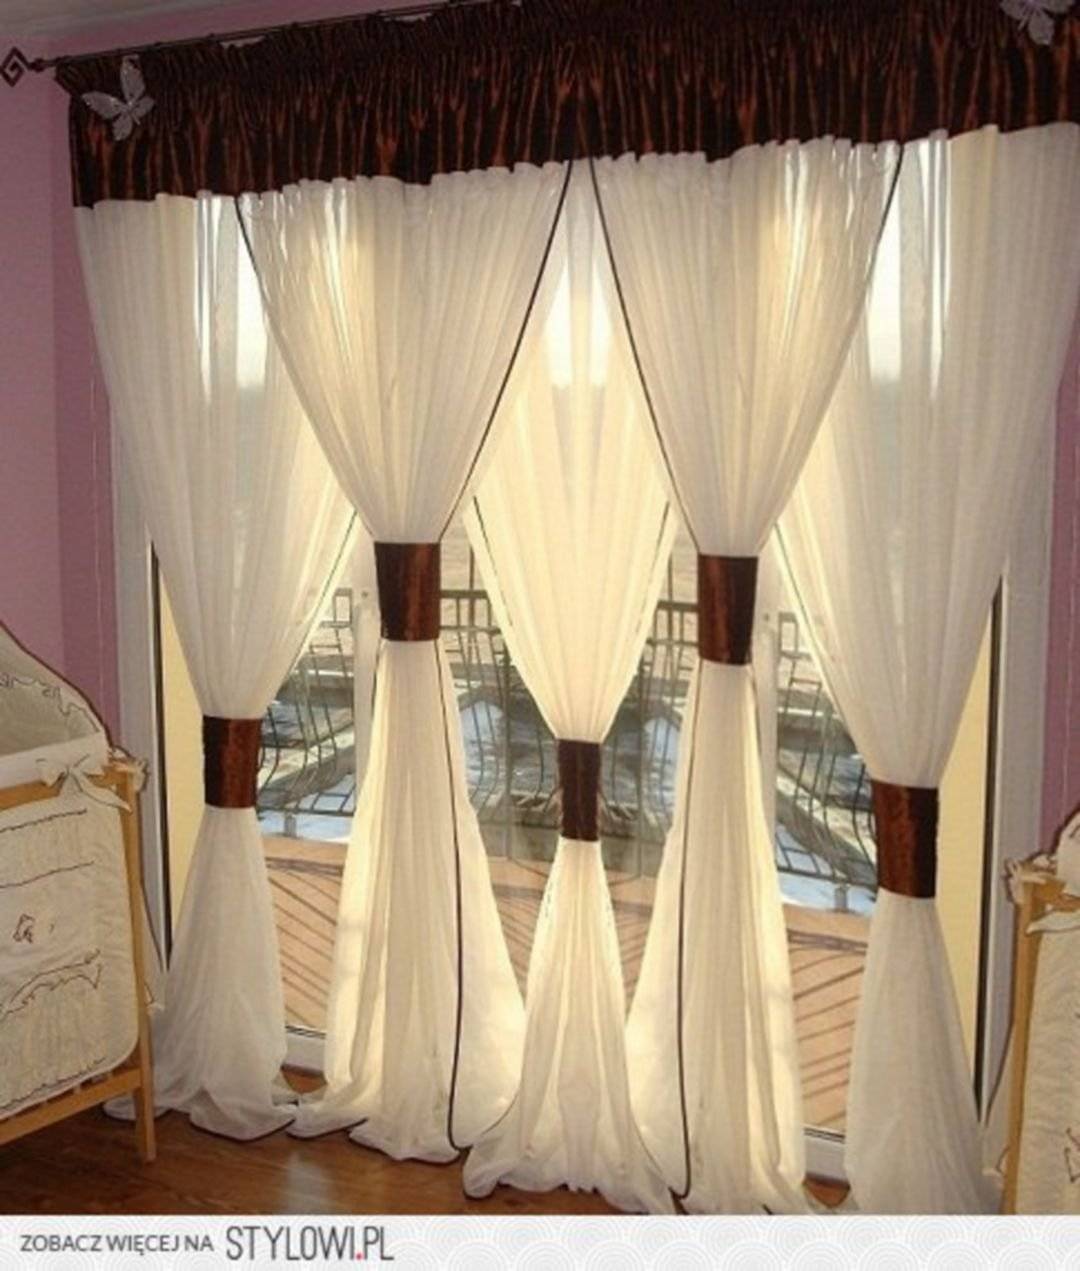 Как повесить шторы красиво и правильно: реальные фото примеры декора и дизайна для гостиной, спальной, детской, зала